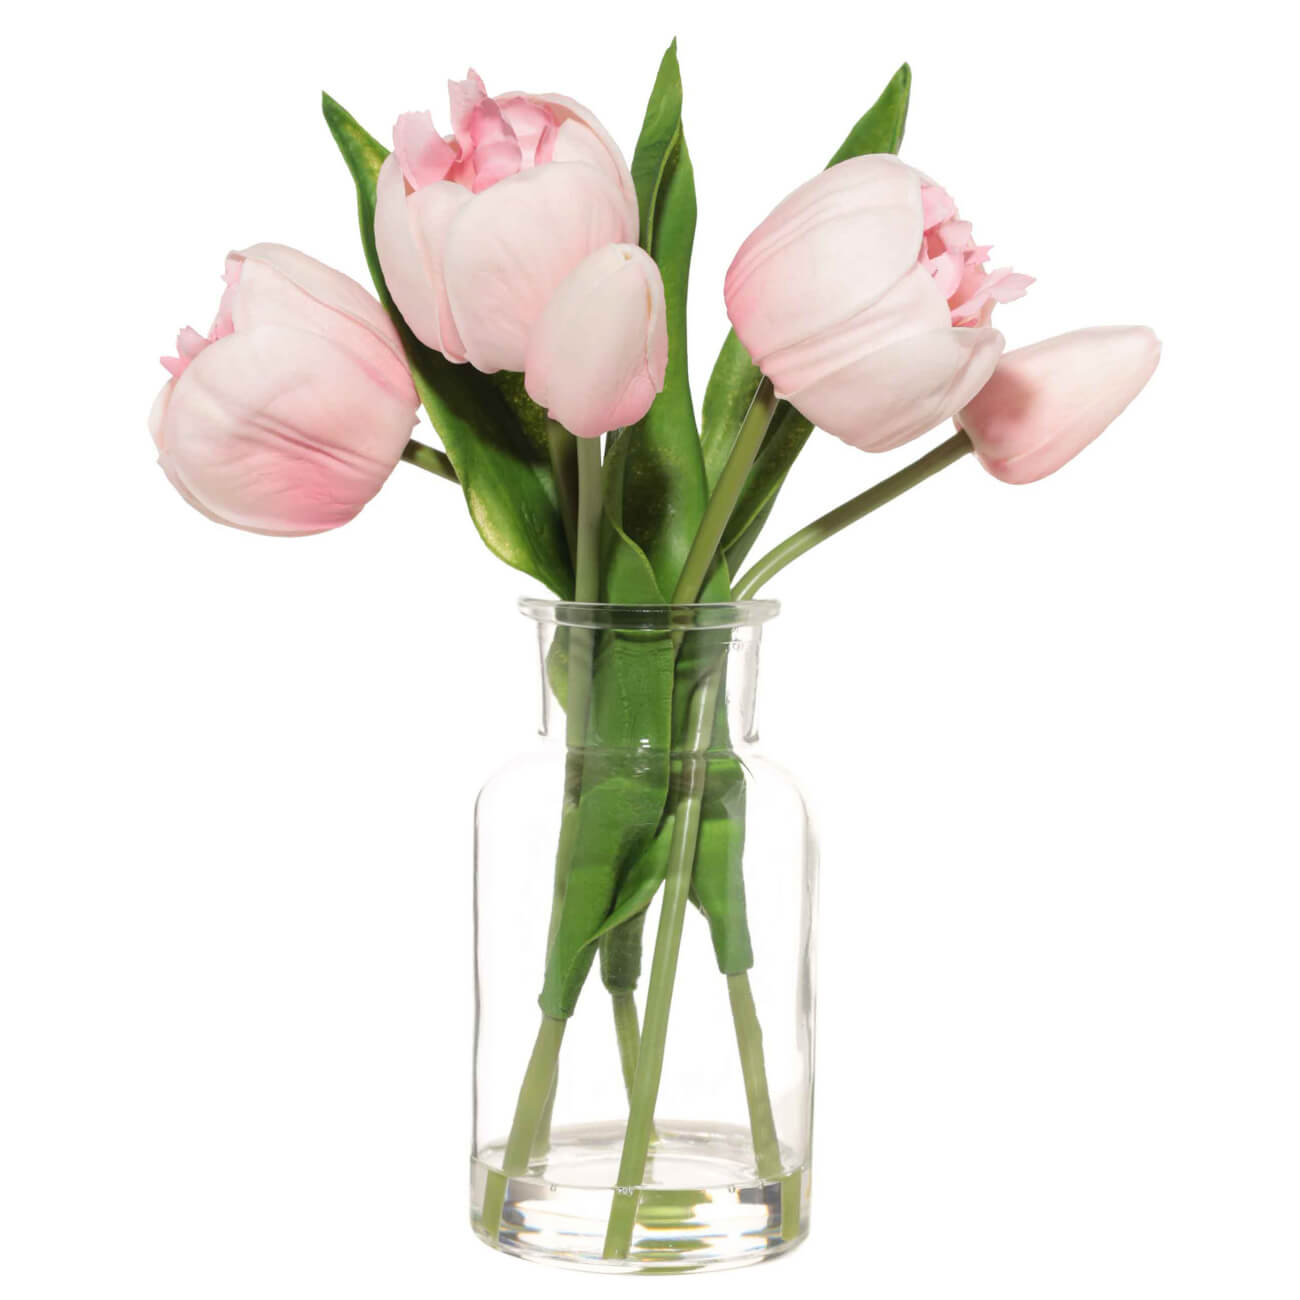 Букет искусственный, 21 см, в вазе, полиуретан/стекло, Розовые тюльпаны, Tulip garden